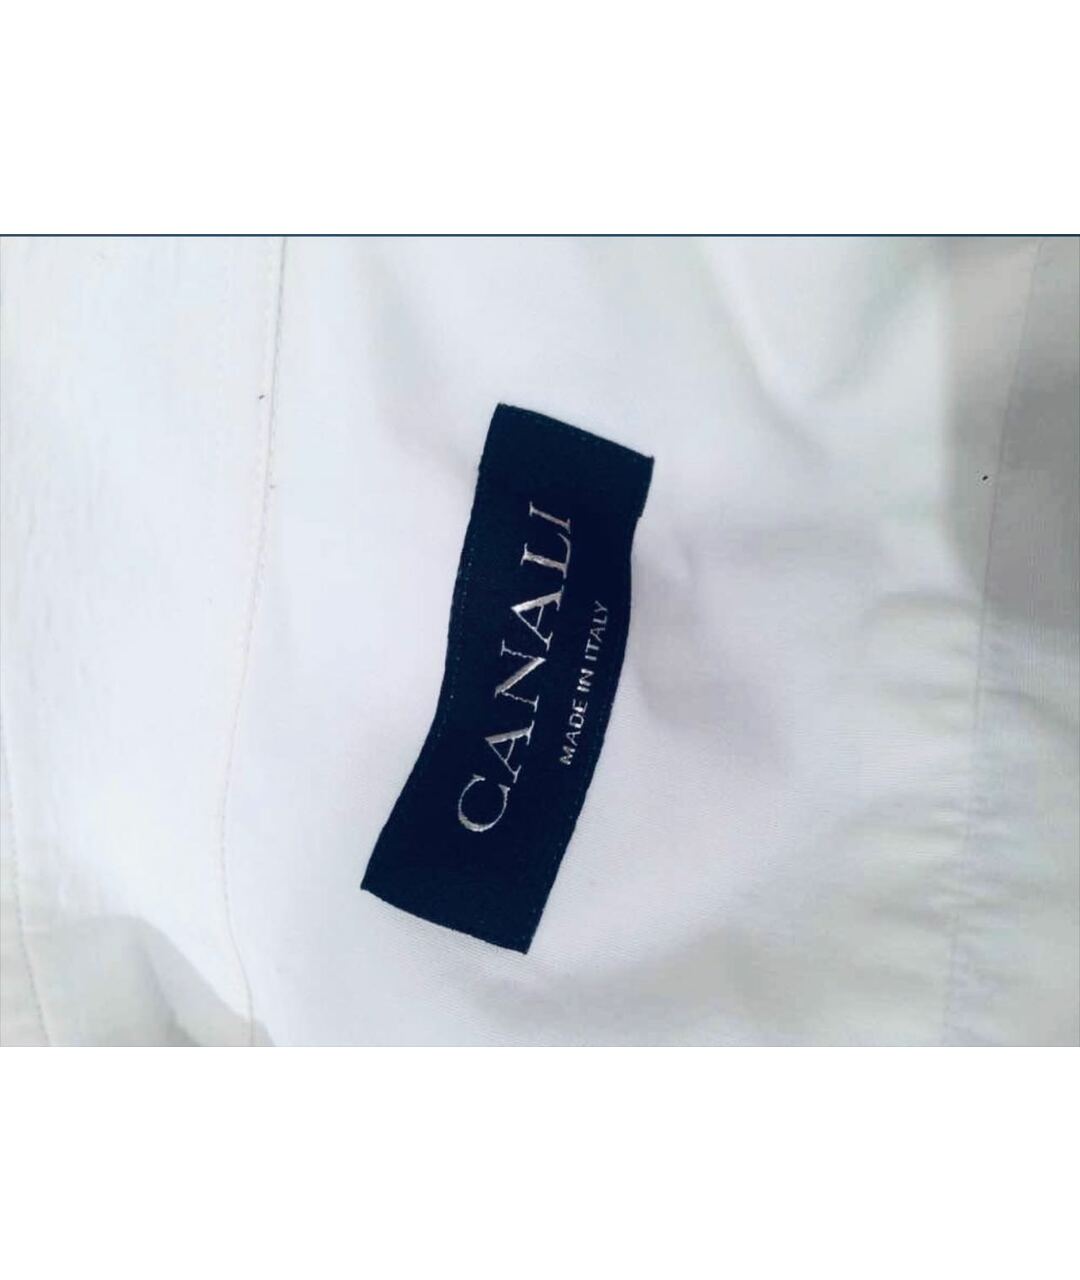 CANALI Белая хлопковая классическая рубашка, фото 3